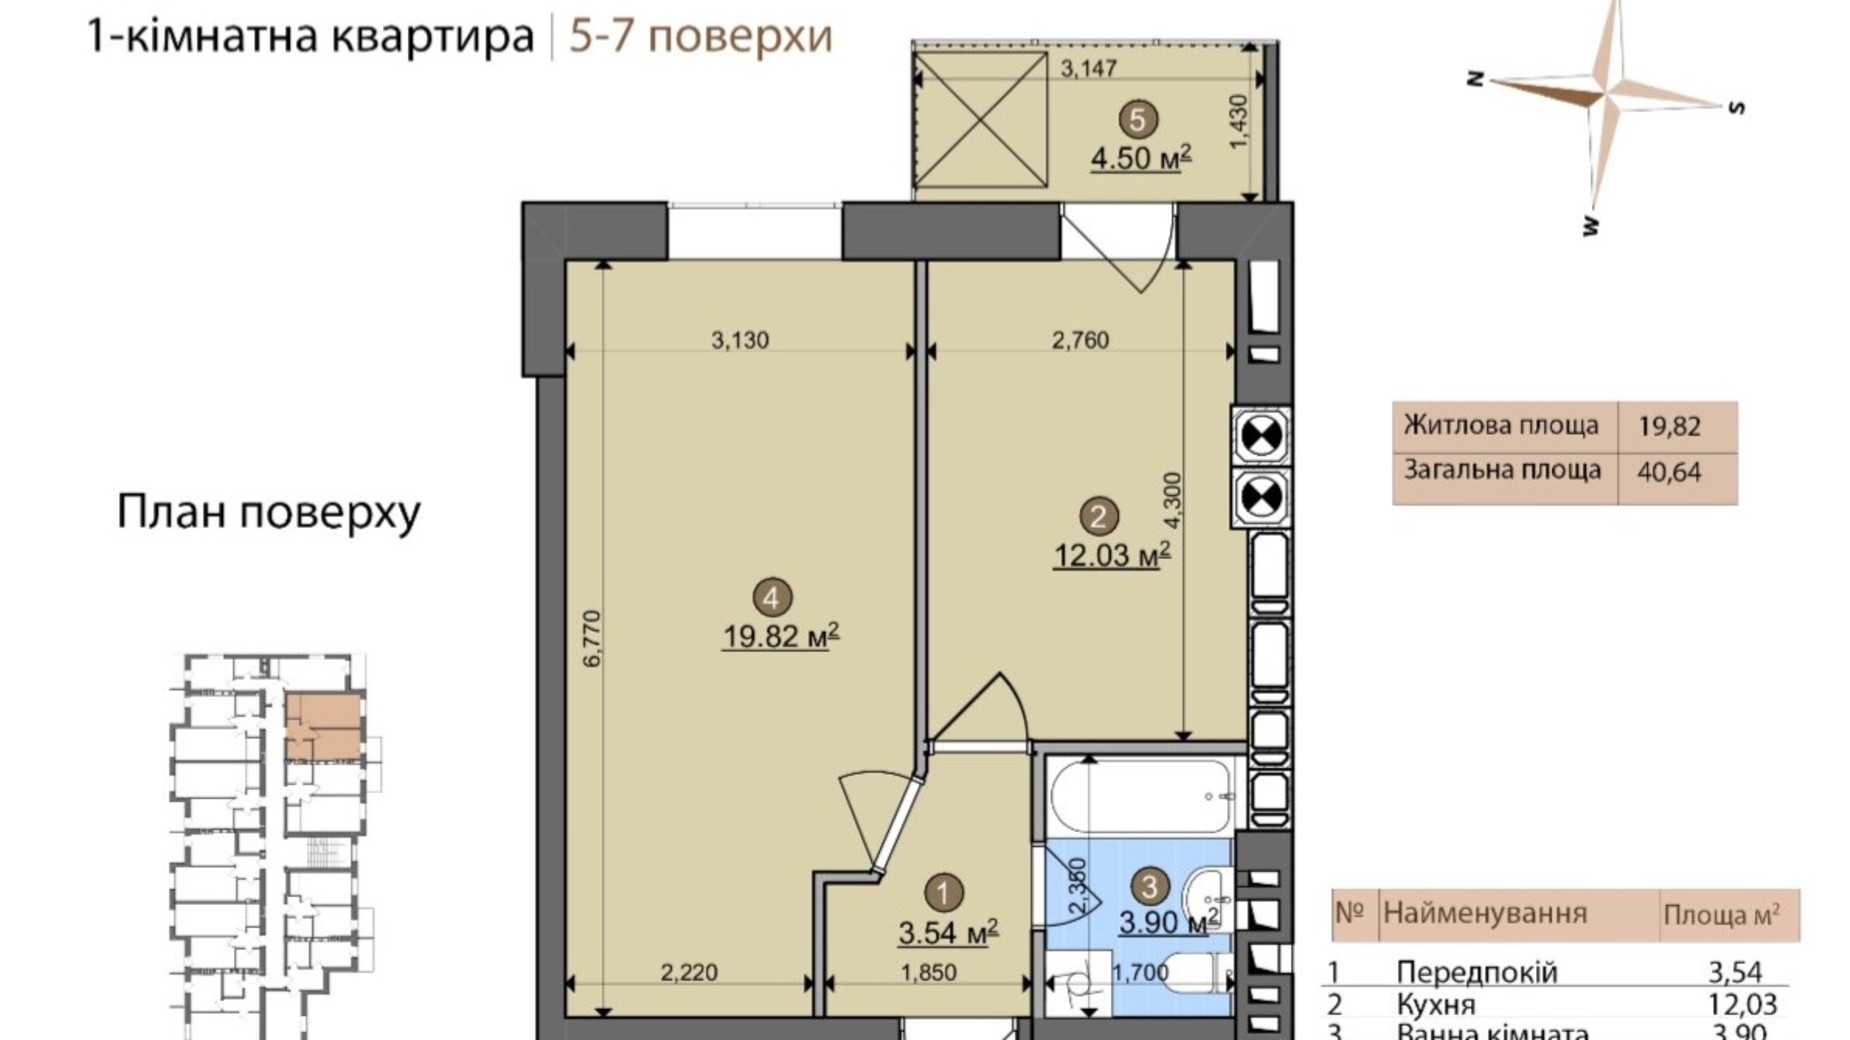 Планировка 1-комнатной квартиры в ЖК Fastiv City 40.64 м², фото 602091